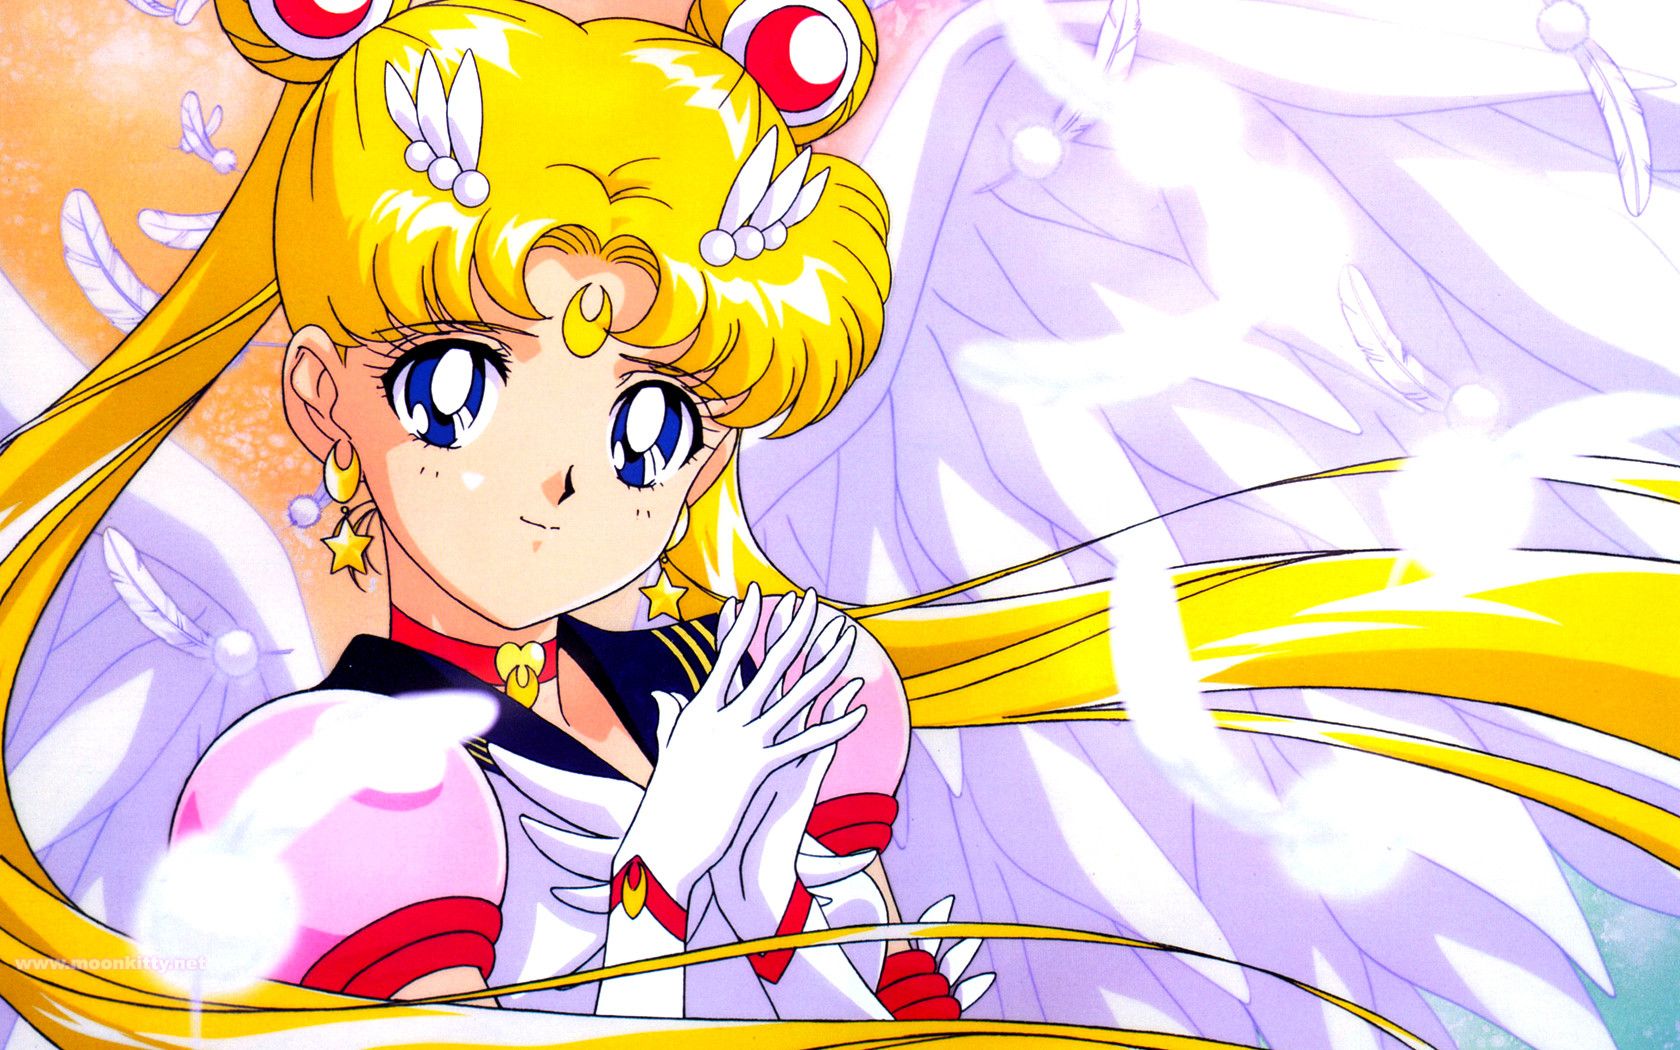 Sailor Wallpaper. Rococo Sailor Moon Wallpaper, Sailor Moon Wallpaper and Sailor Moon Manga Wallpaper